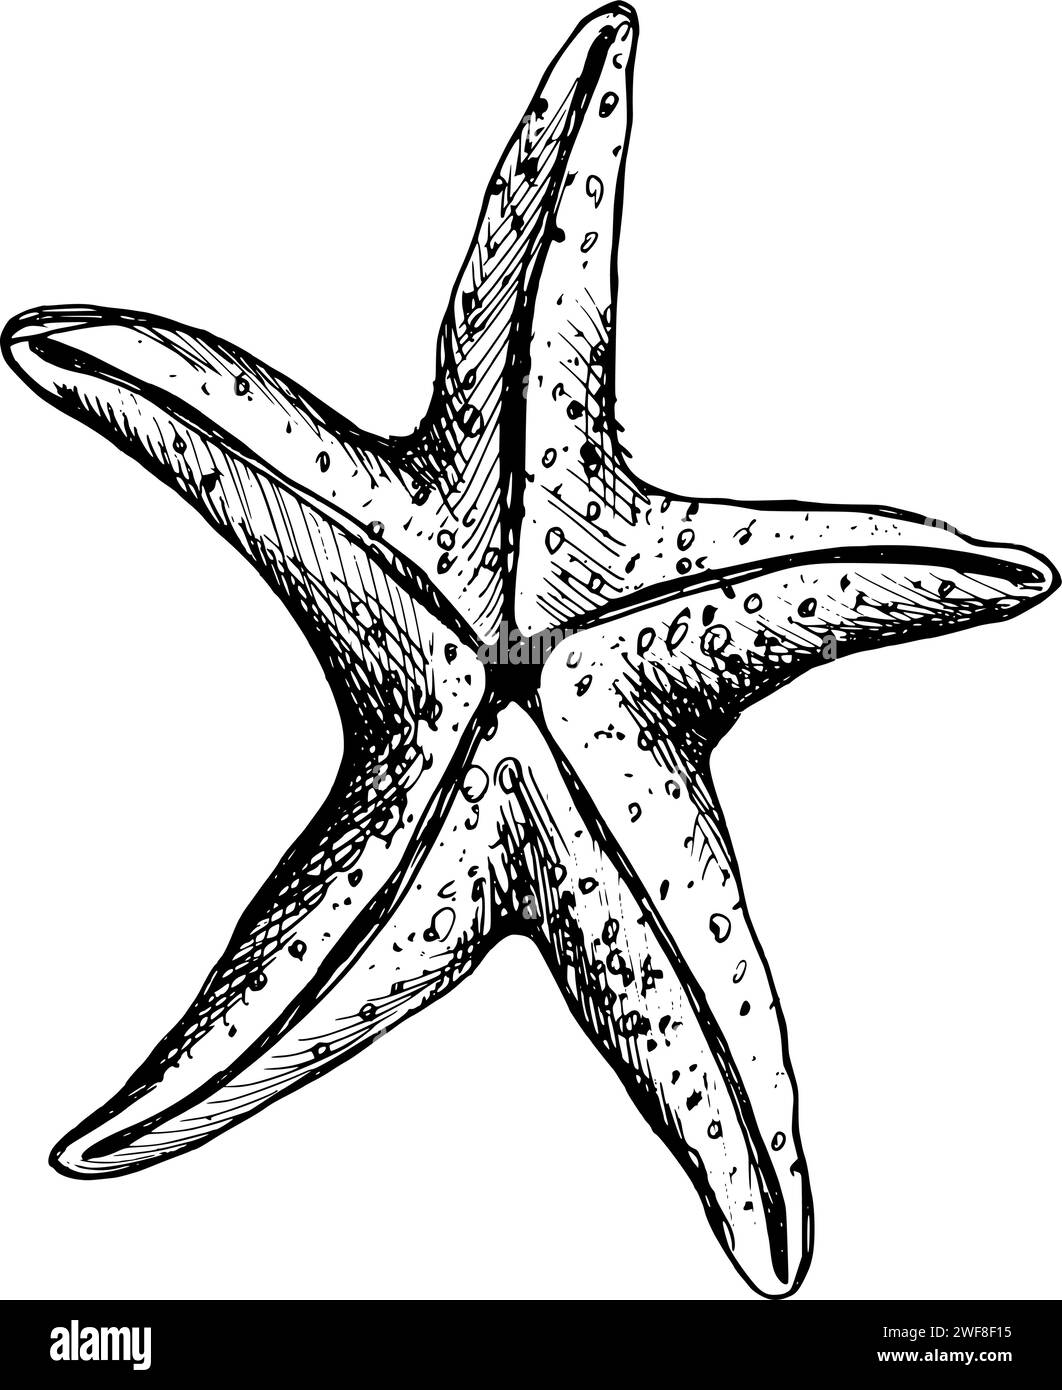 Unterwasser-Welt-Clipart mit Seesternen. Grafische Abbildung, handgezeichnet mit schwarzer Tinte. Isolierter Objekt-EPS-Vektor. Stock Vektor